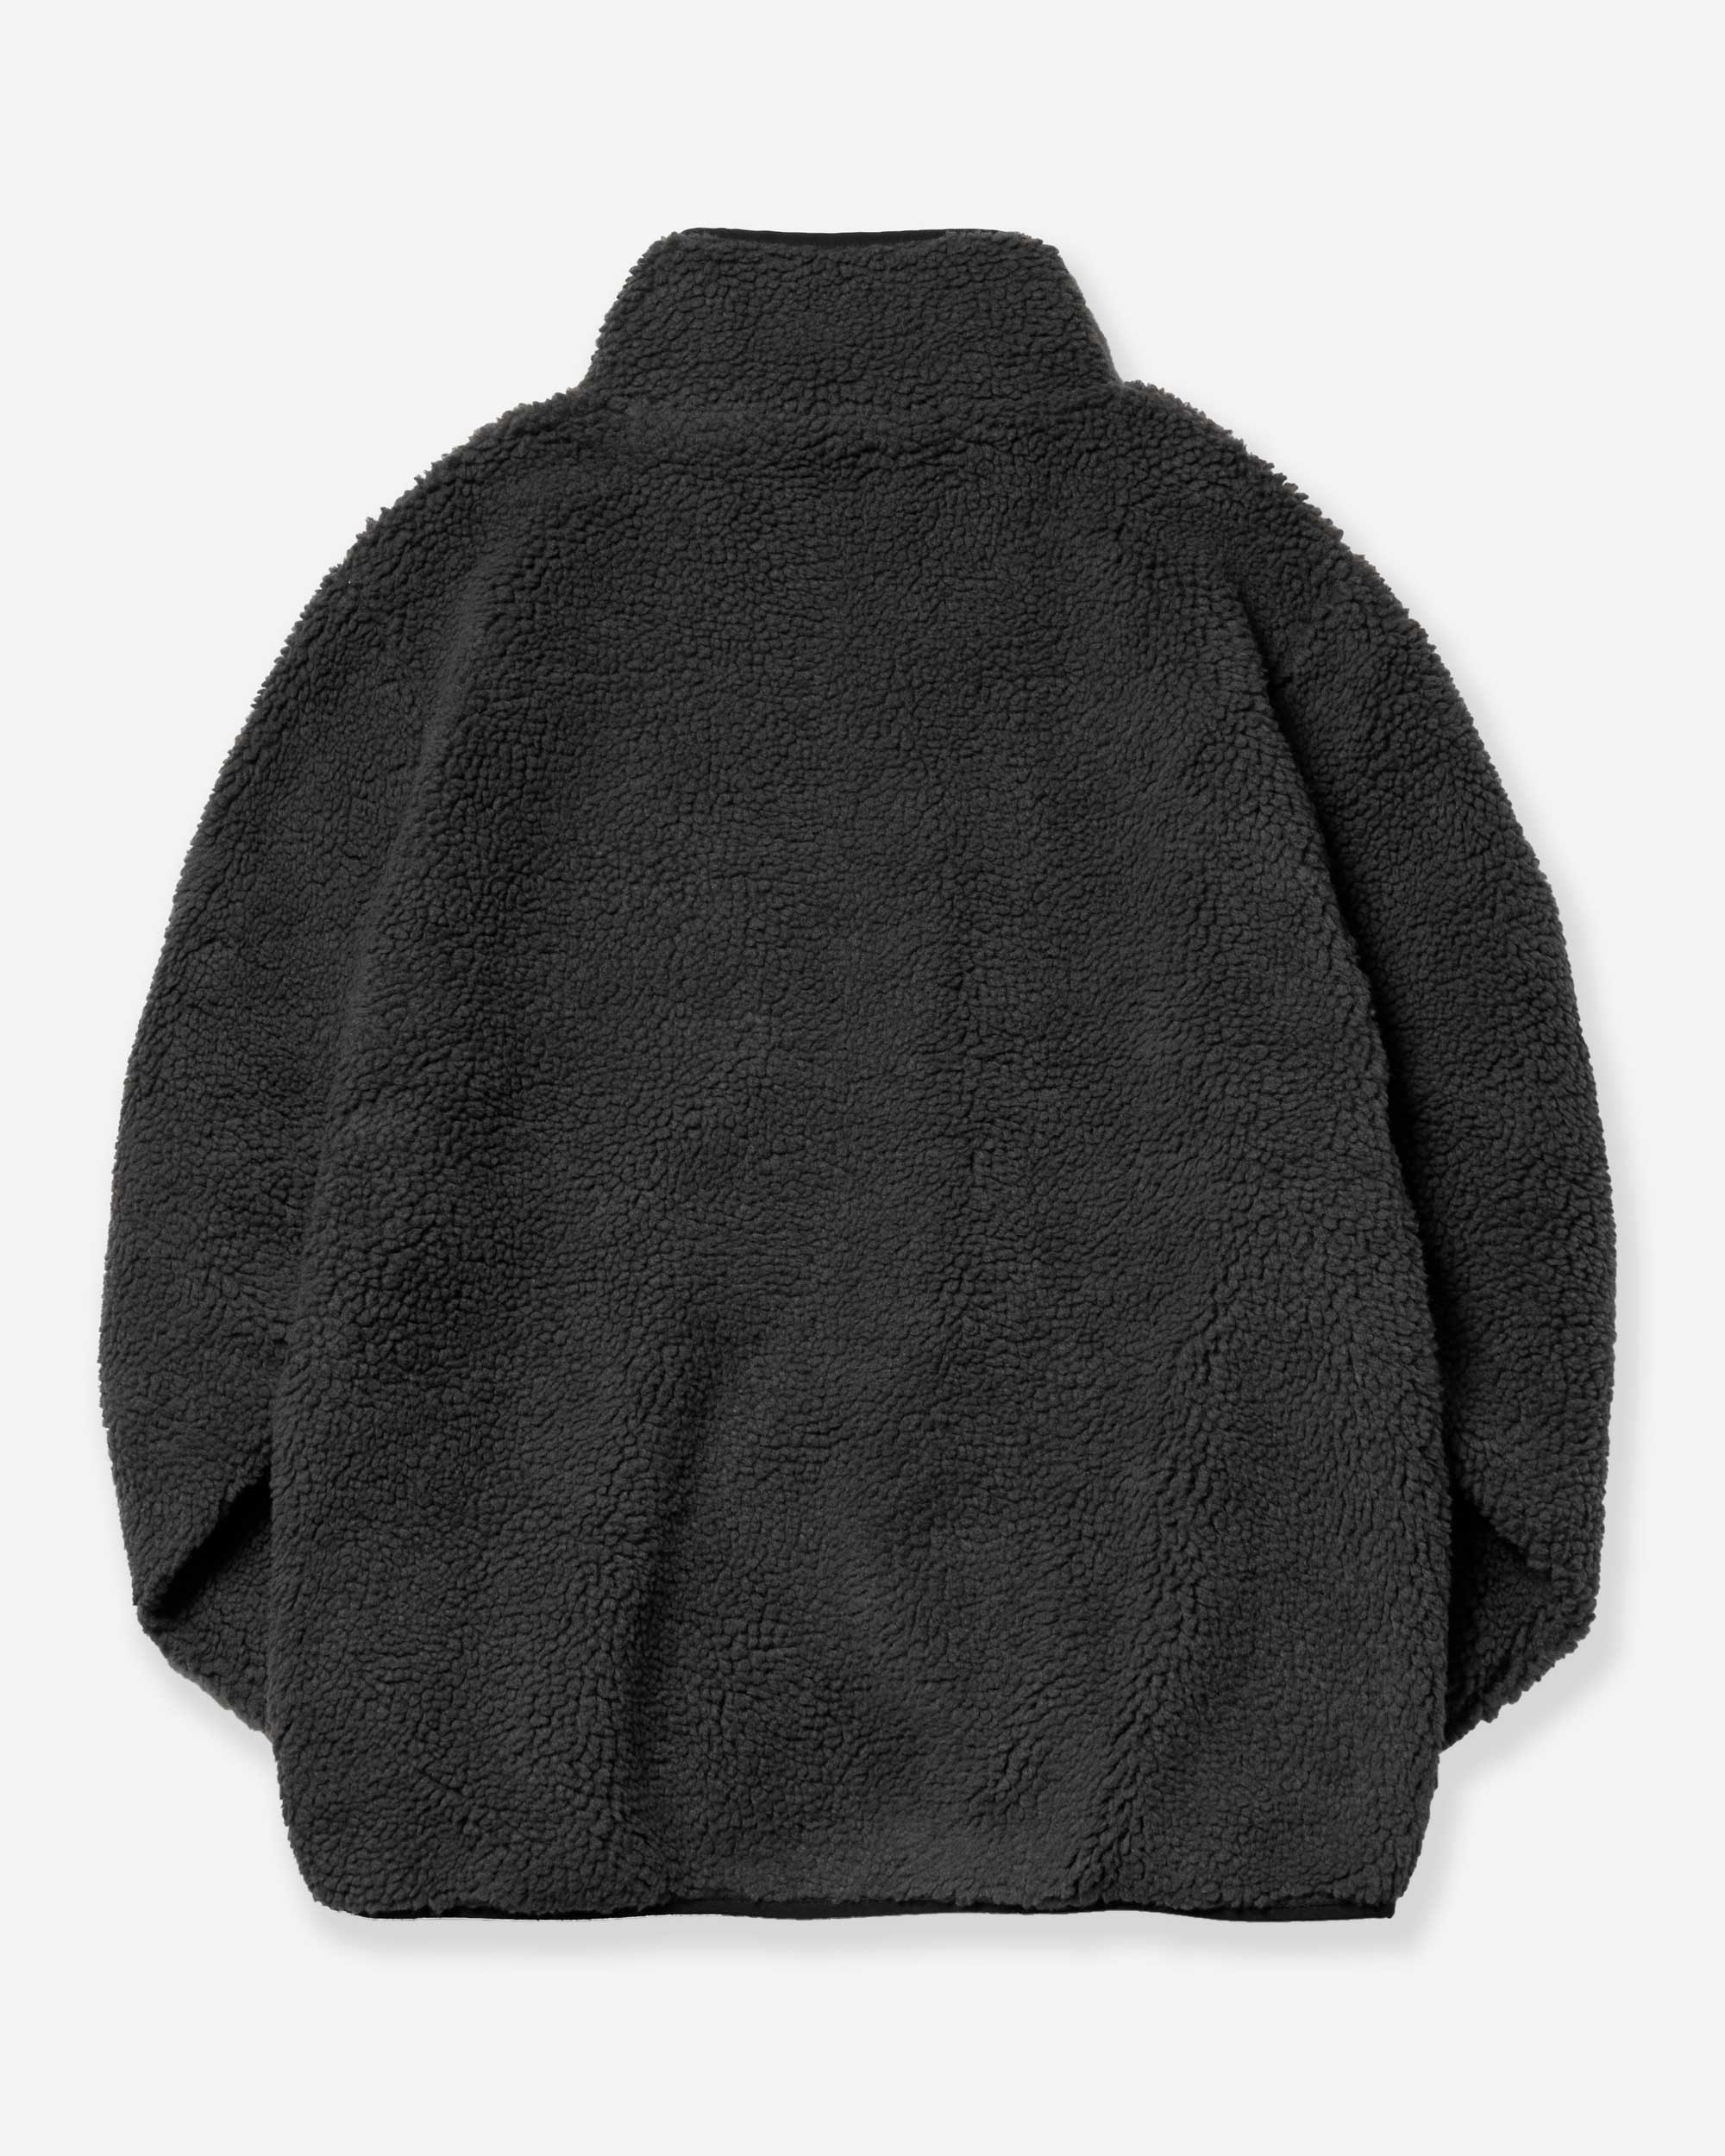 Zip Fleece - Charcoal/ Black